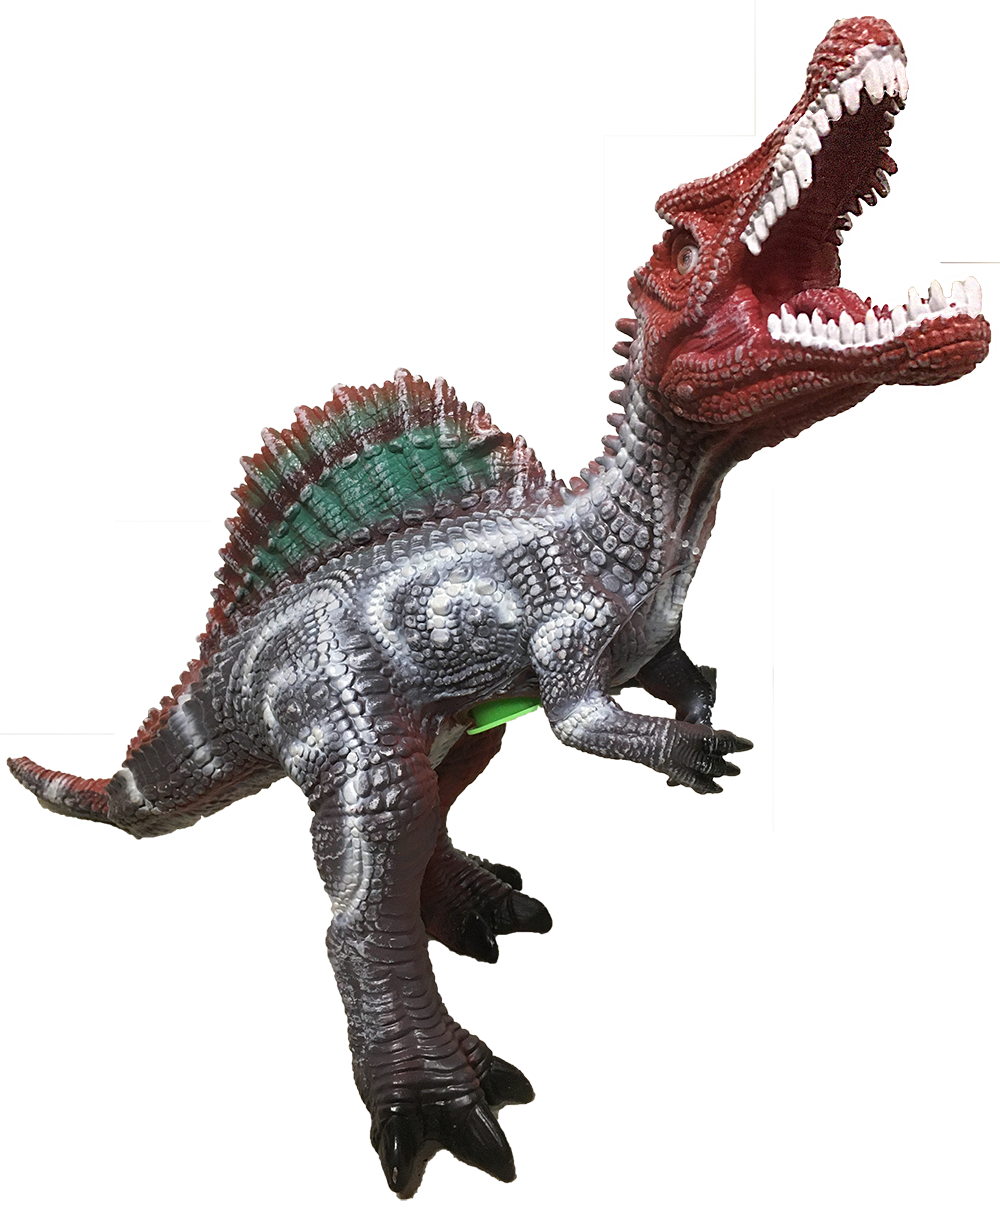 Spinosaurus 19" Vinyl Dinosaur Figurine with Sound Effects